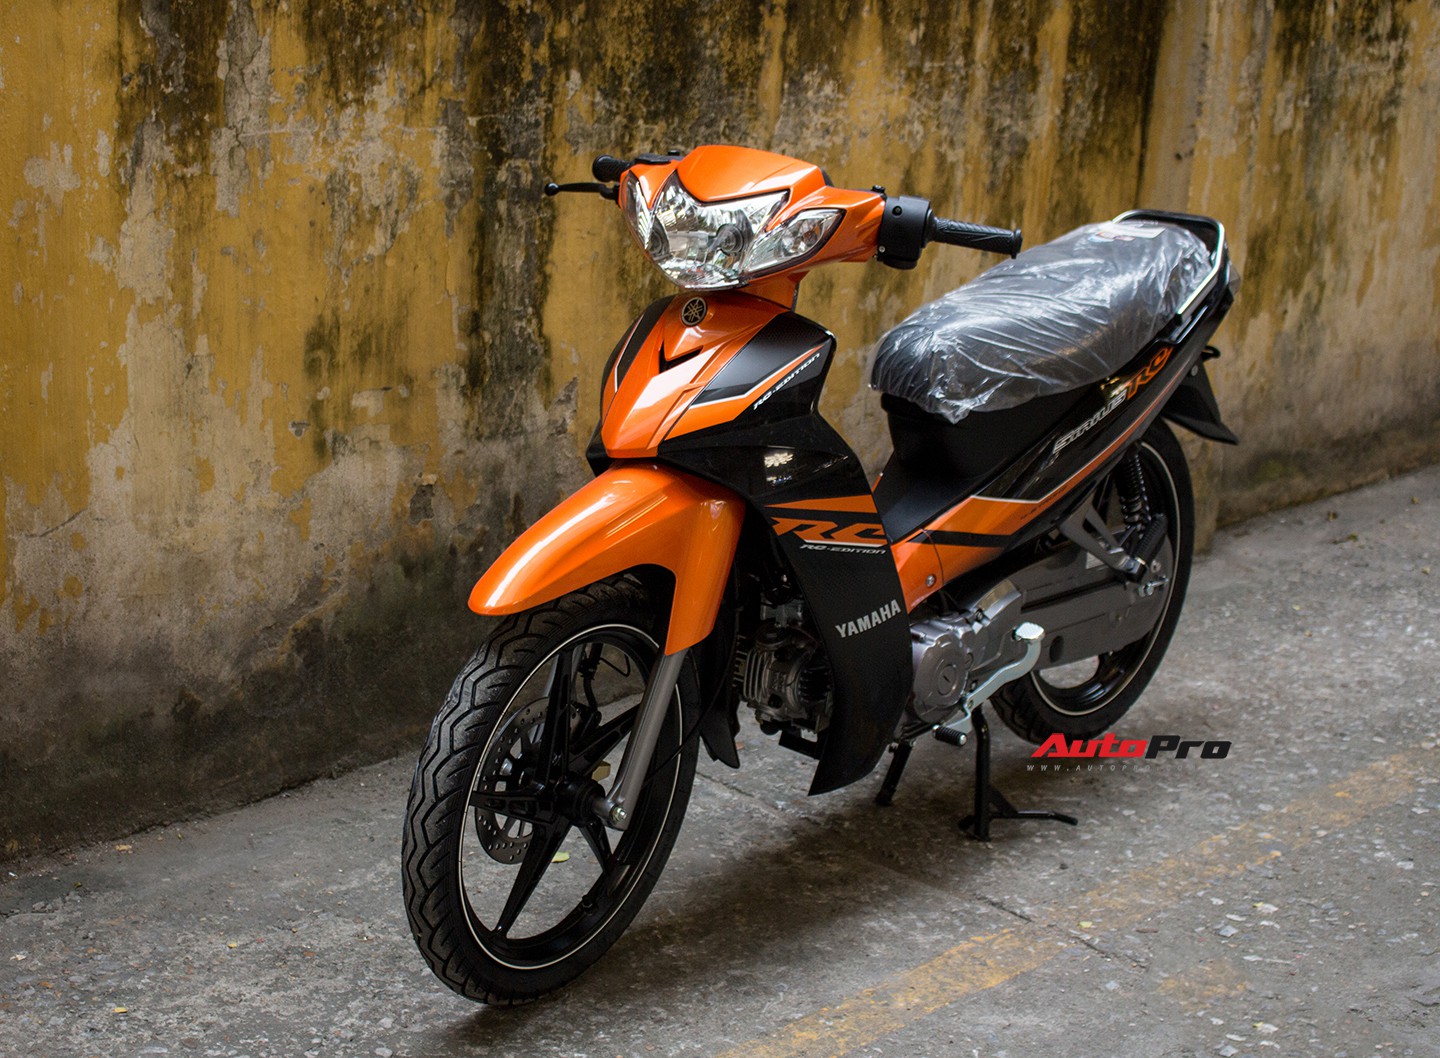 Chi tiết xe máy bán chạy nhất Việt Nam trong bản màu mới